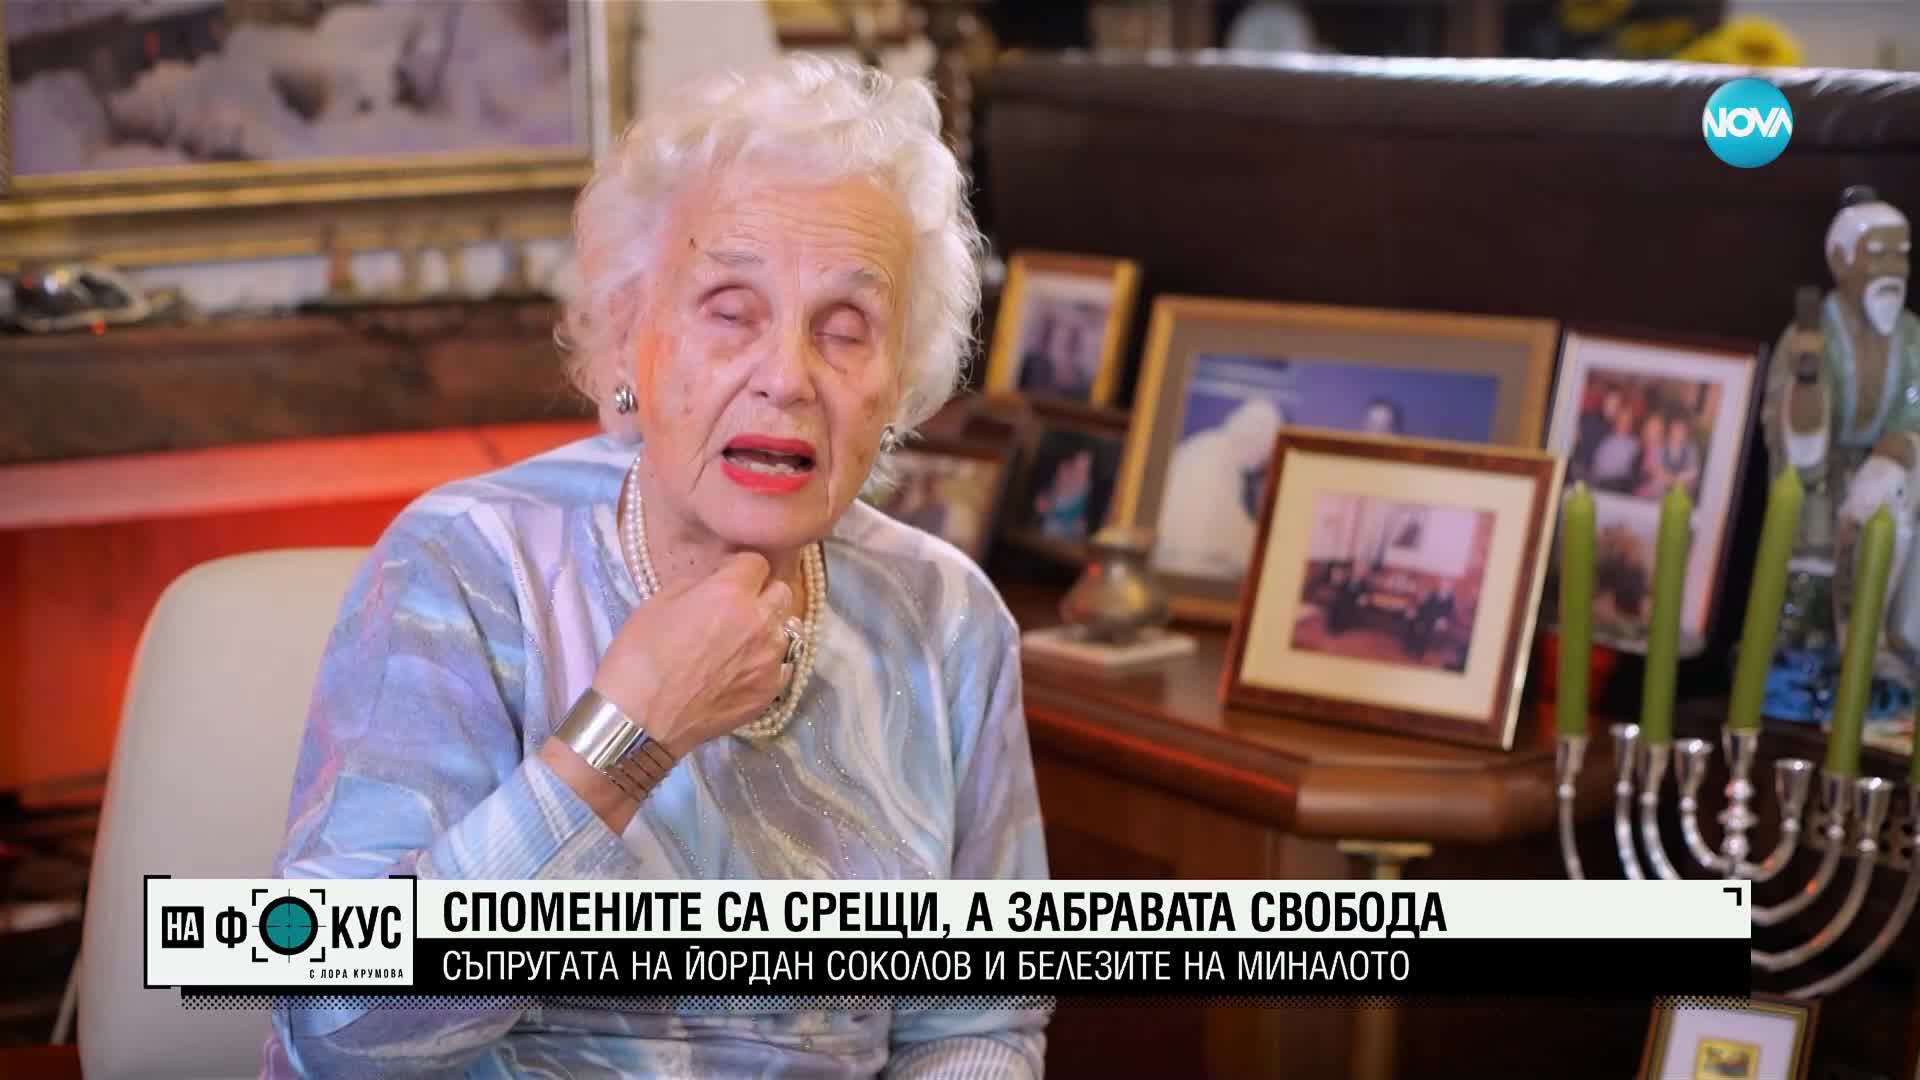 Споменът е среща: Съпругата на Йордан Соколов за белезите на миналото